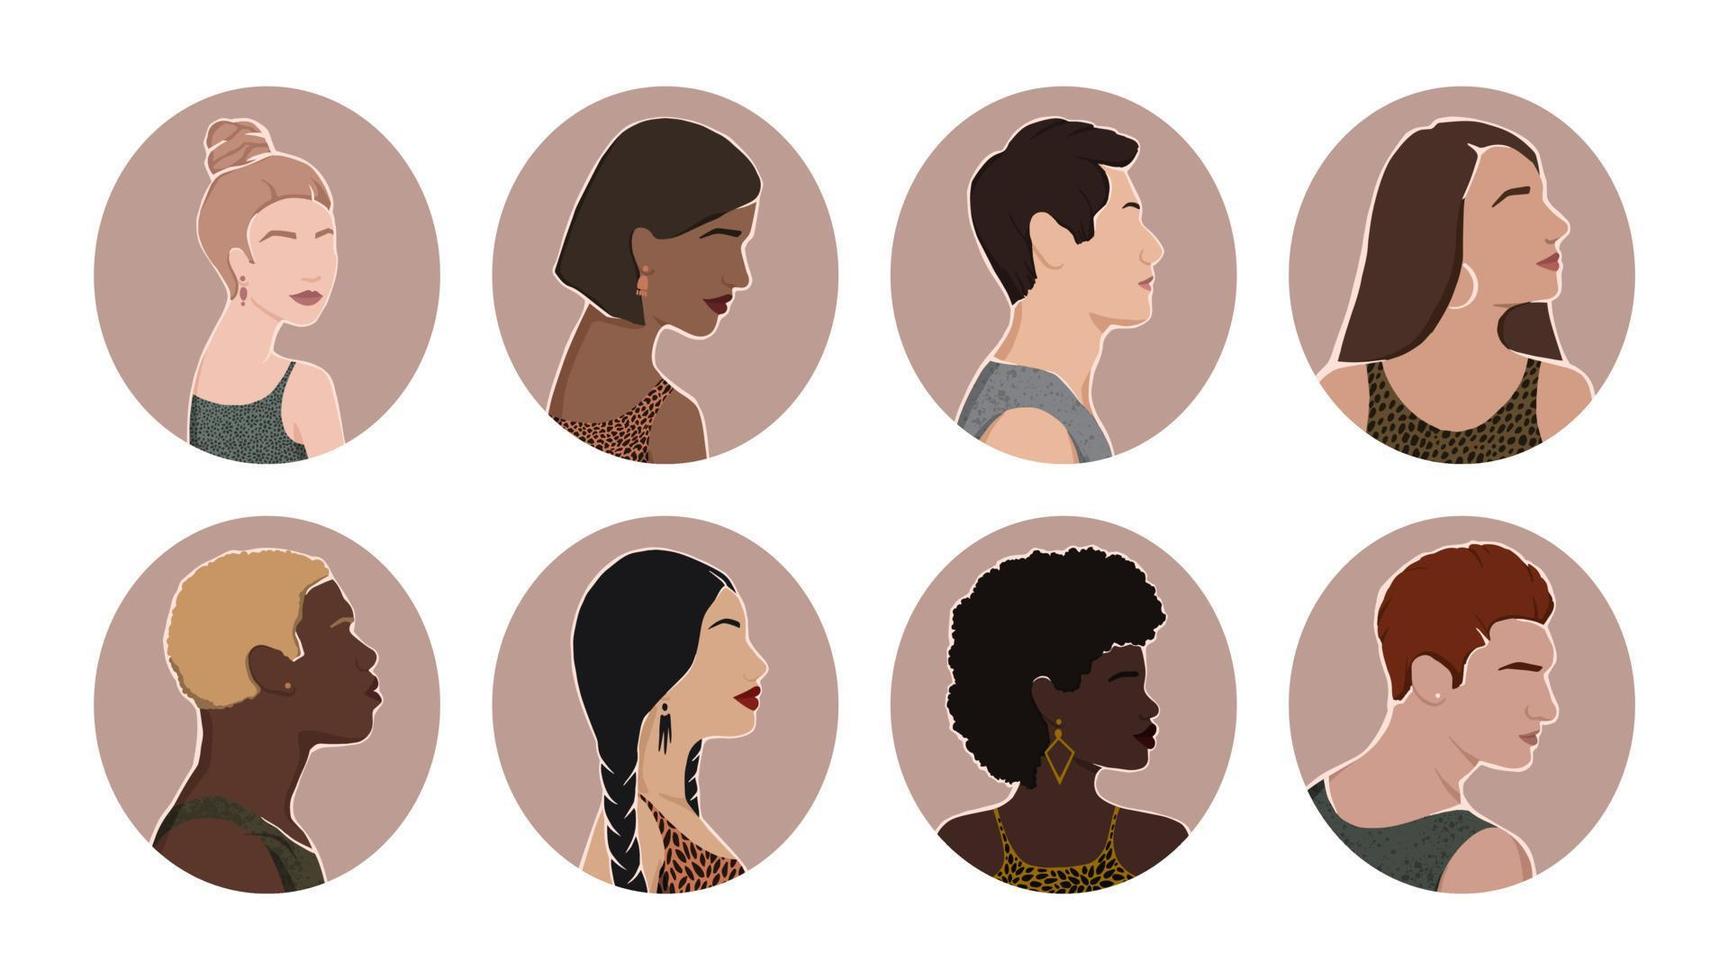 ensemble d'icônes avec un groupe de personnes diverses de différentes origines ethniques se tiennent ensemble. tous les gens sont égaux. illustration plate. vecteur